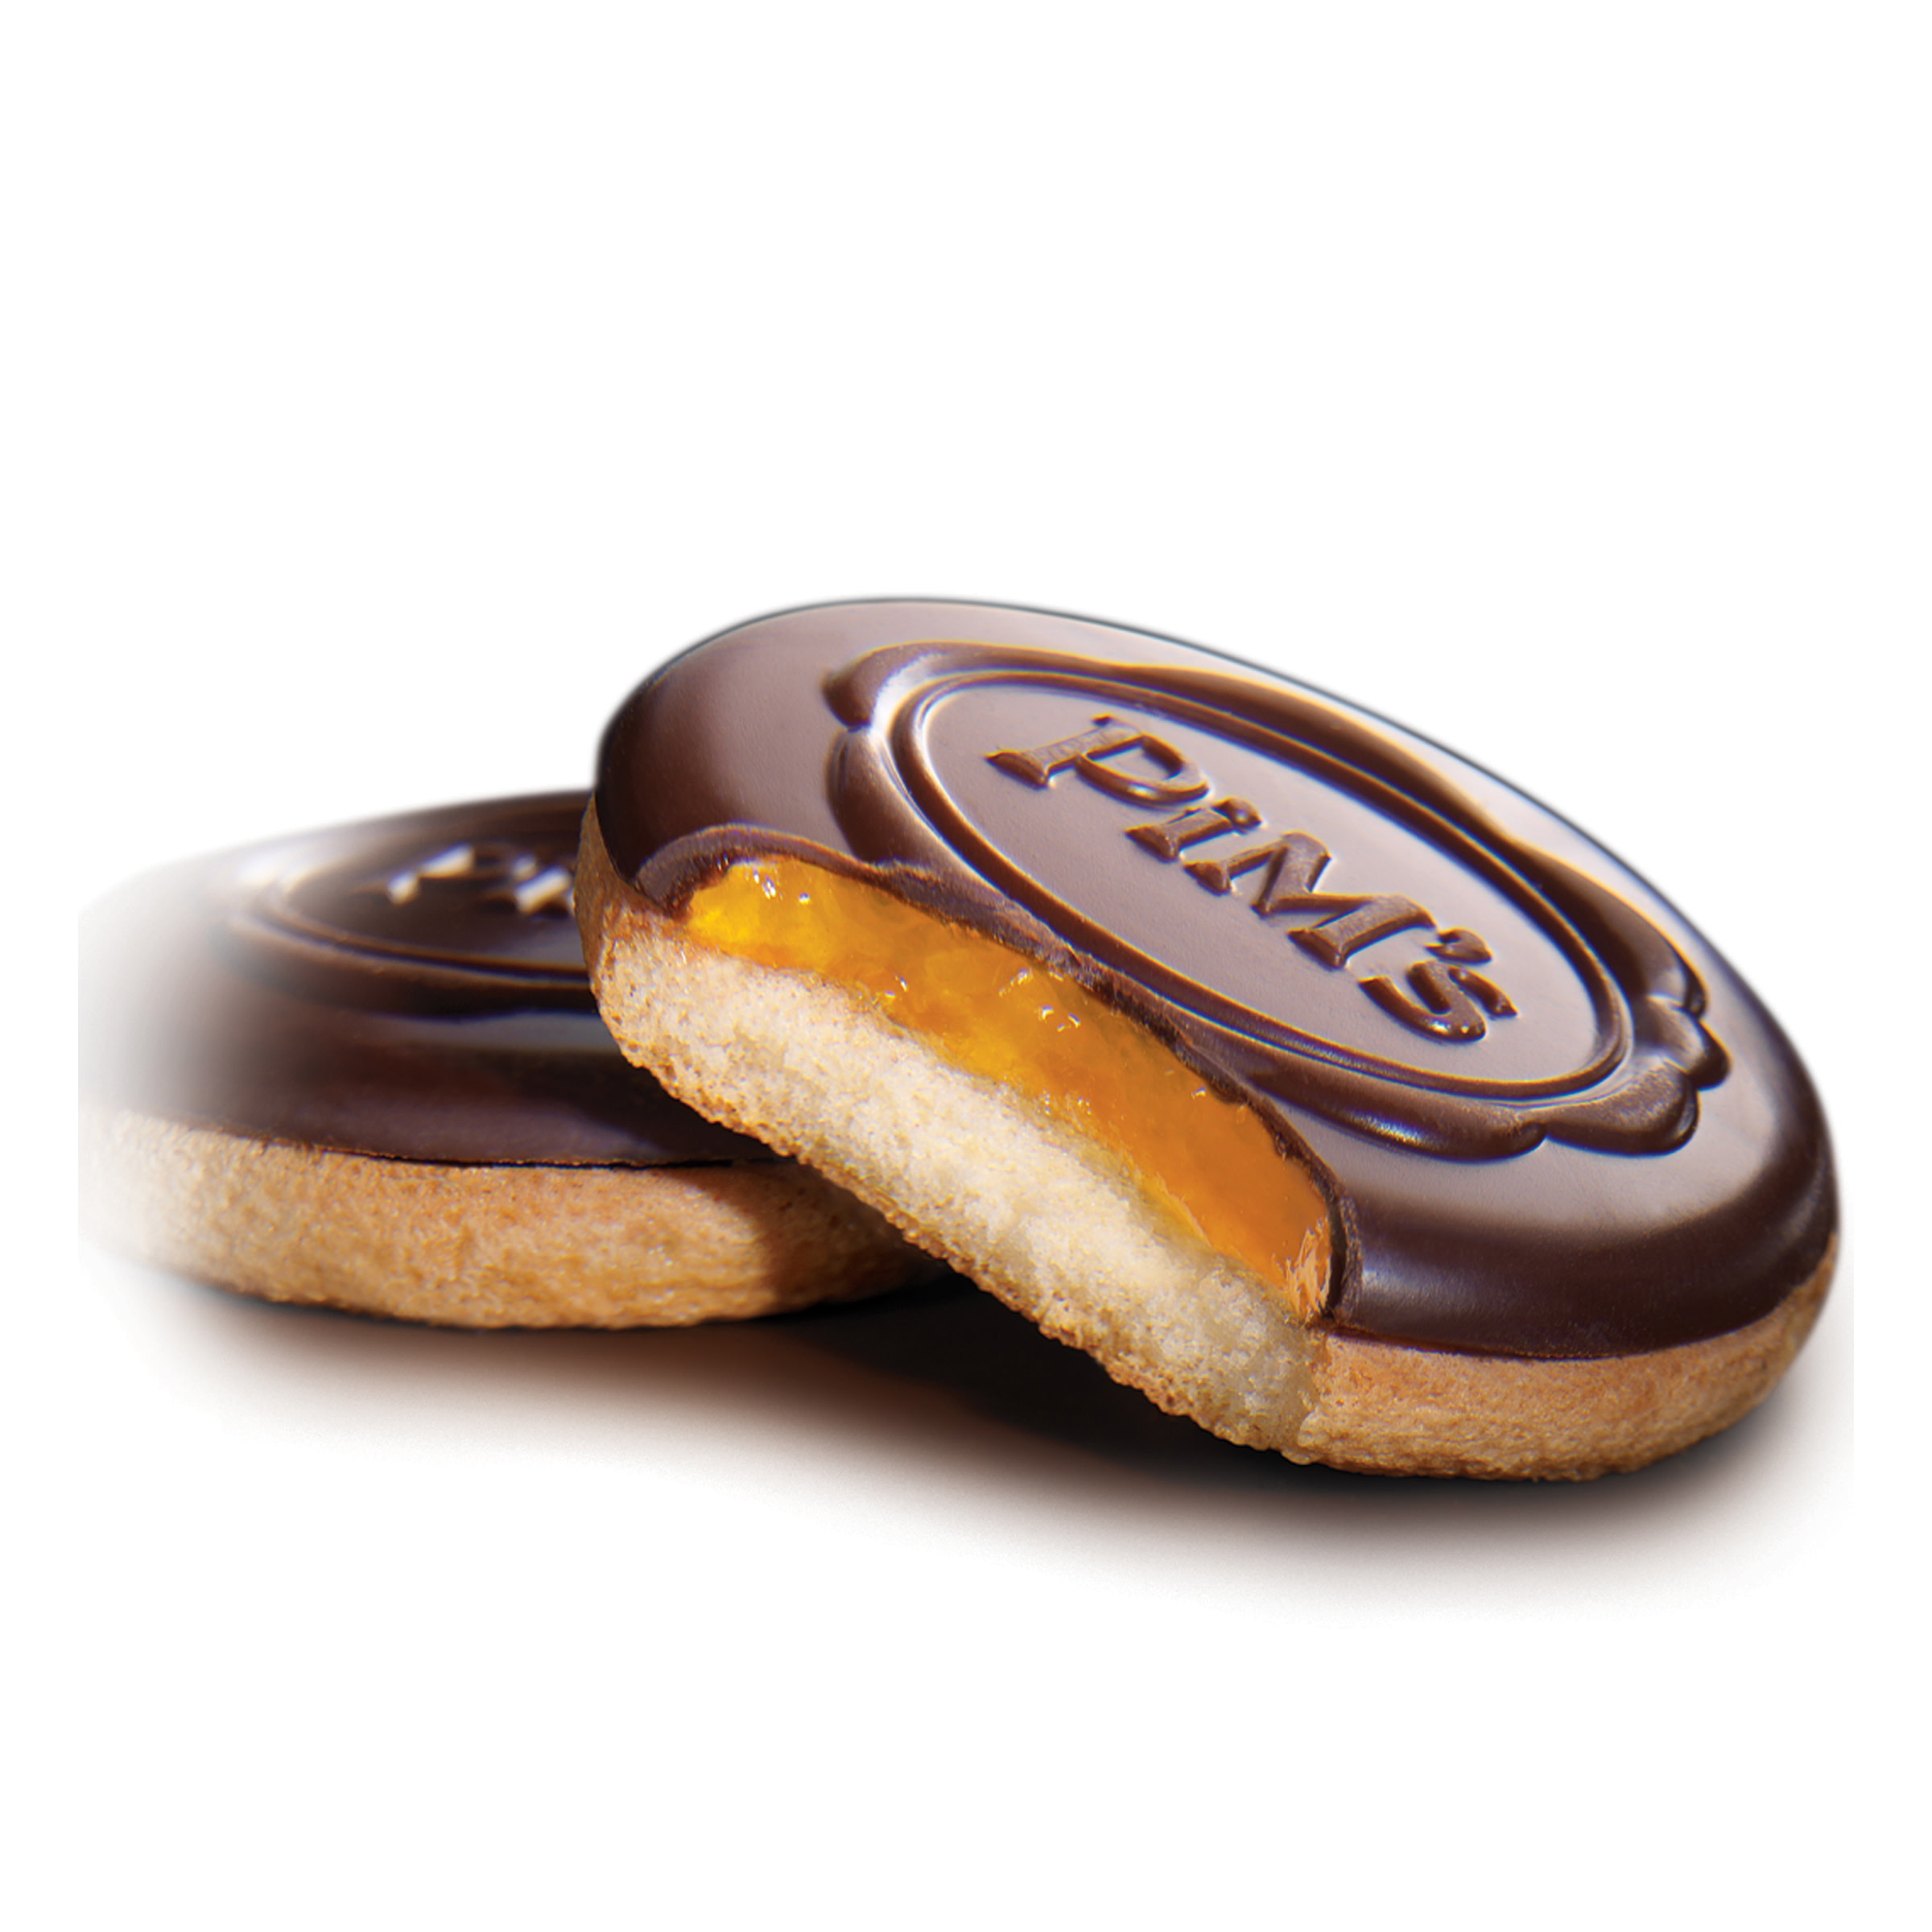 Lu Pim's Orange European Biscuits, 5.29 oz - image 3 of 5